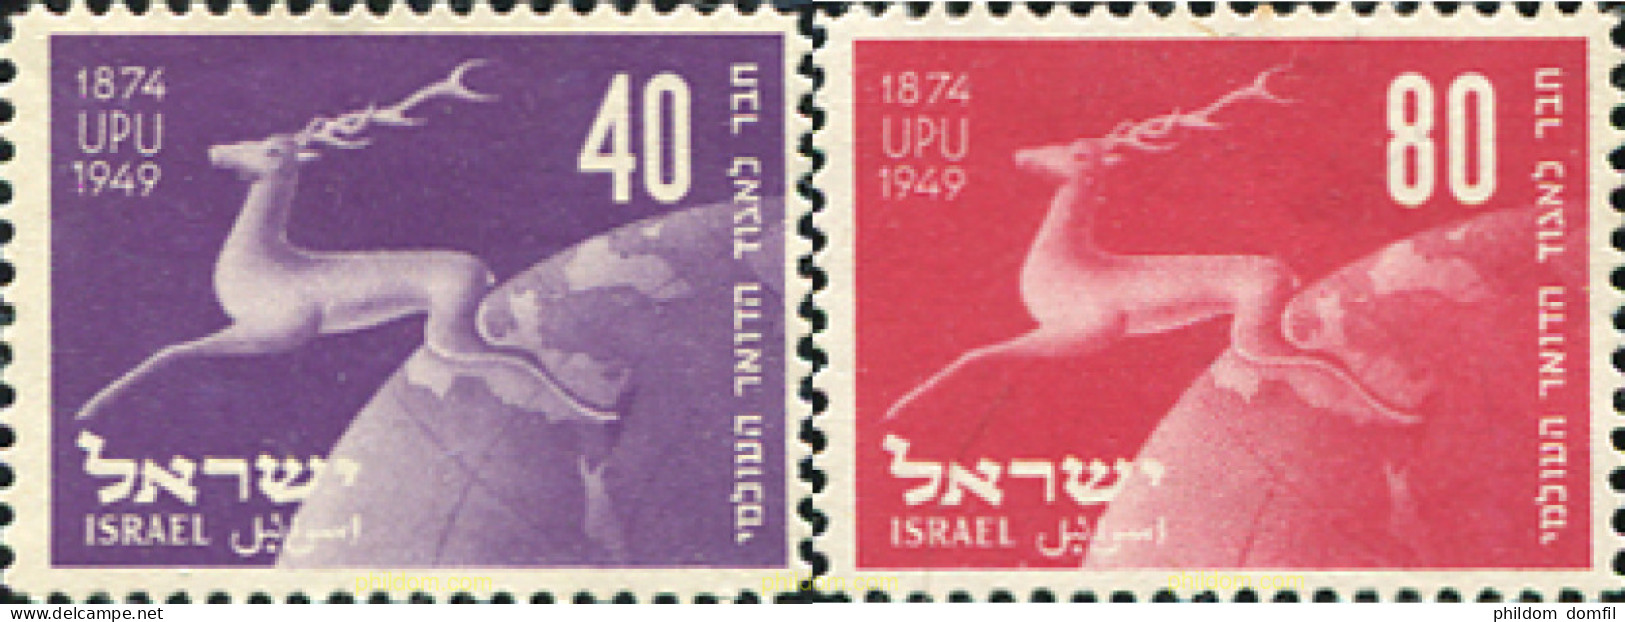 79291 MNH ISRAEL 1950 75 ANIVERSARIO DE LA UPU - Nuevos (sin Tab)